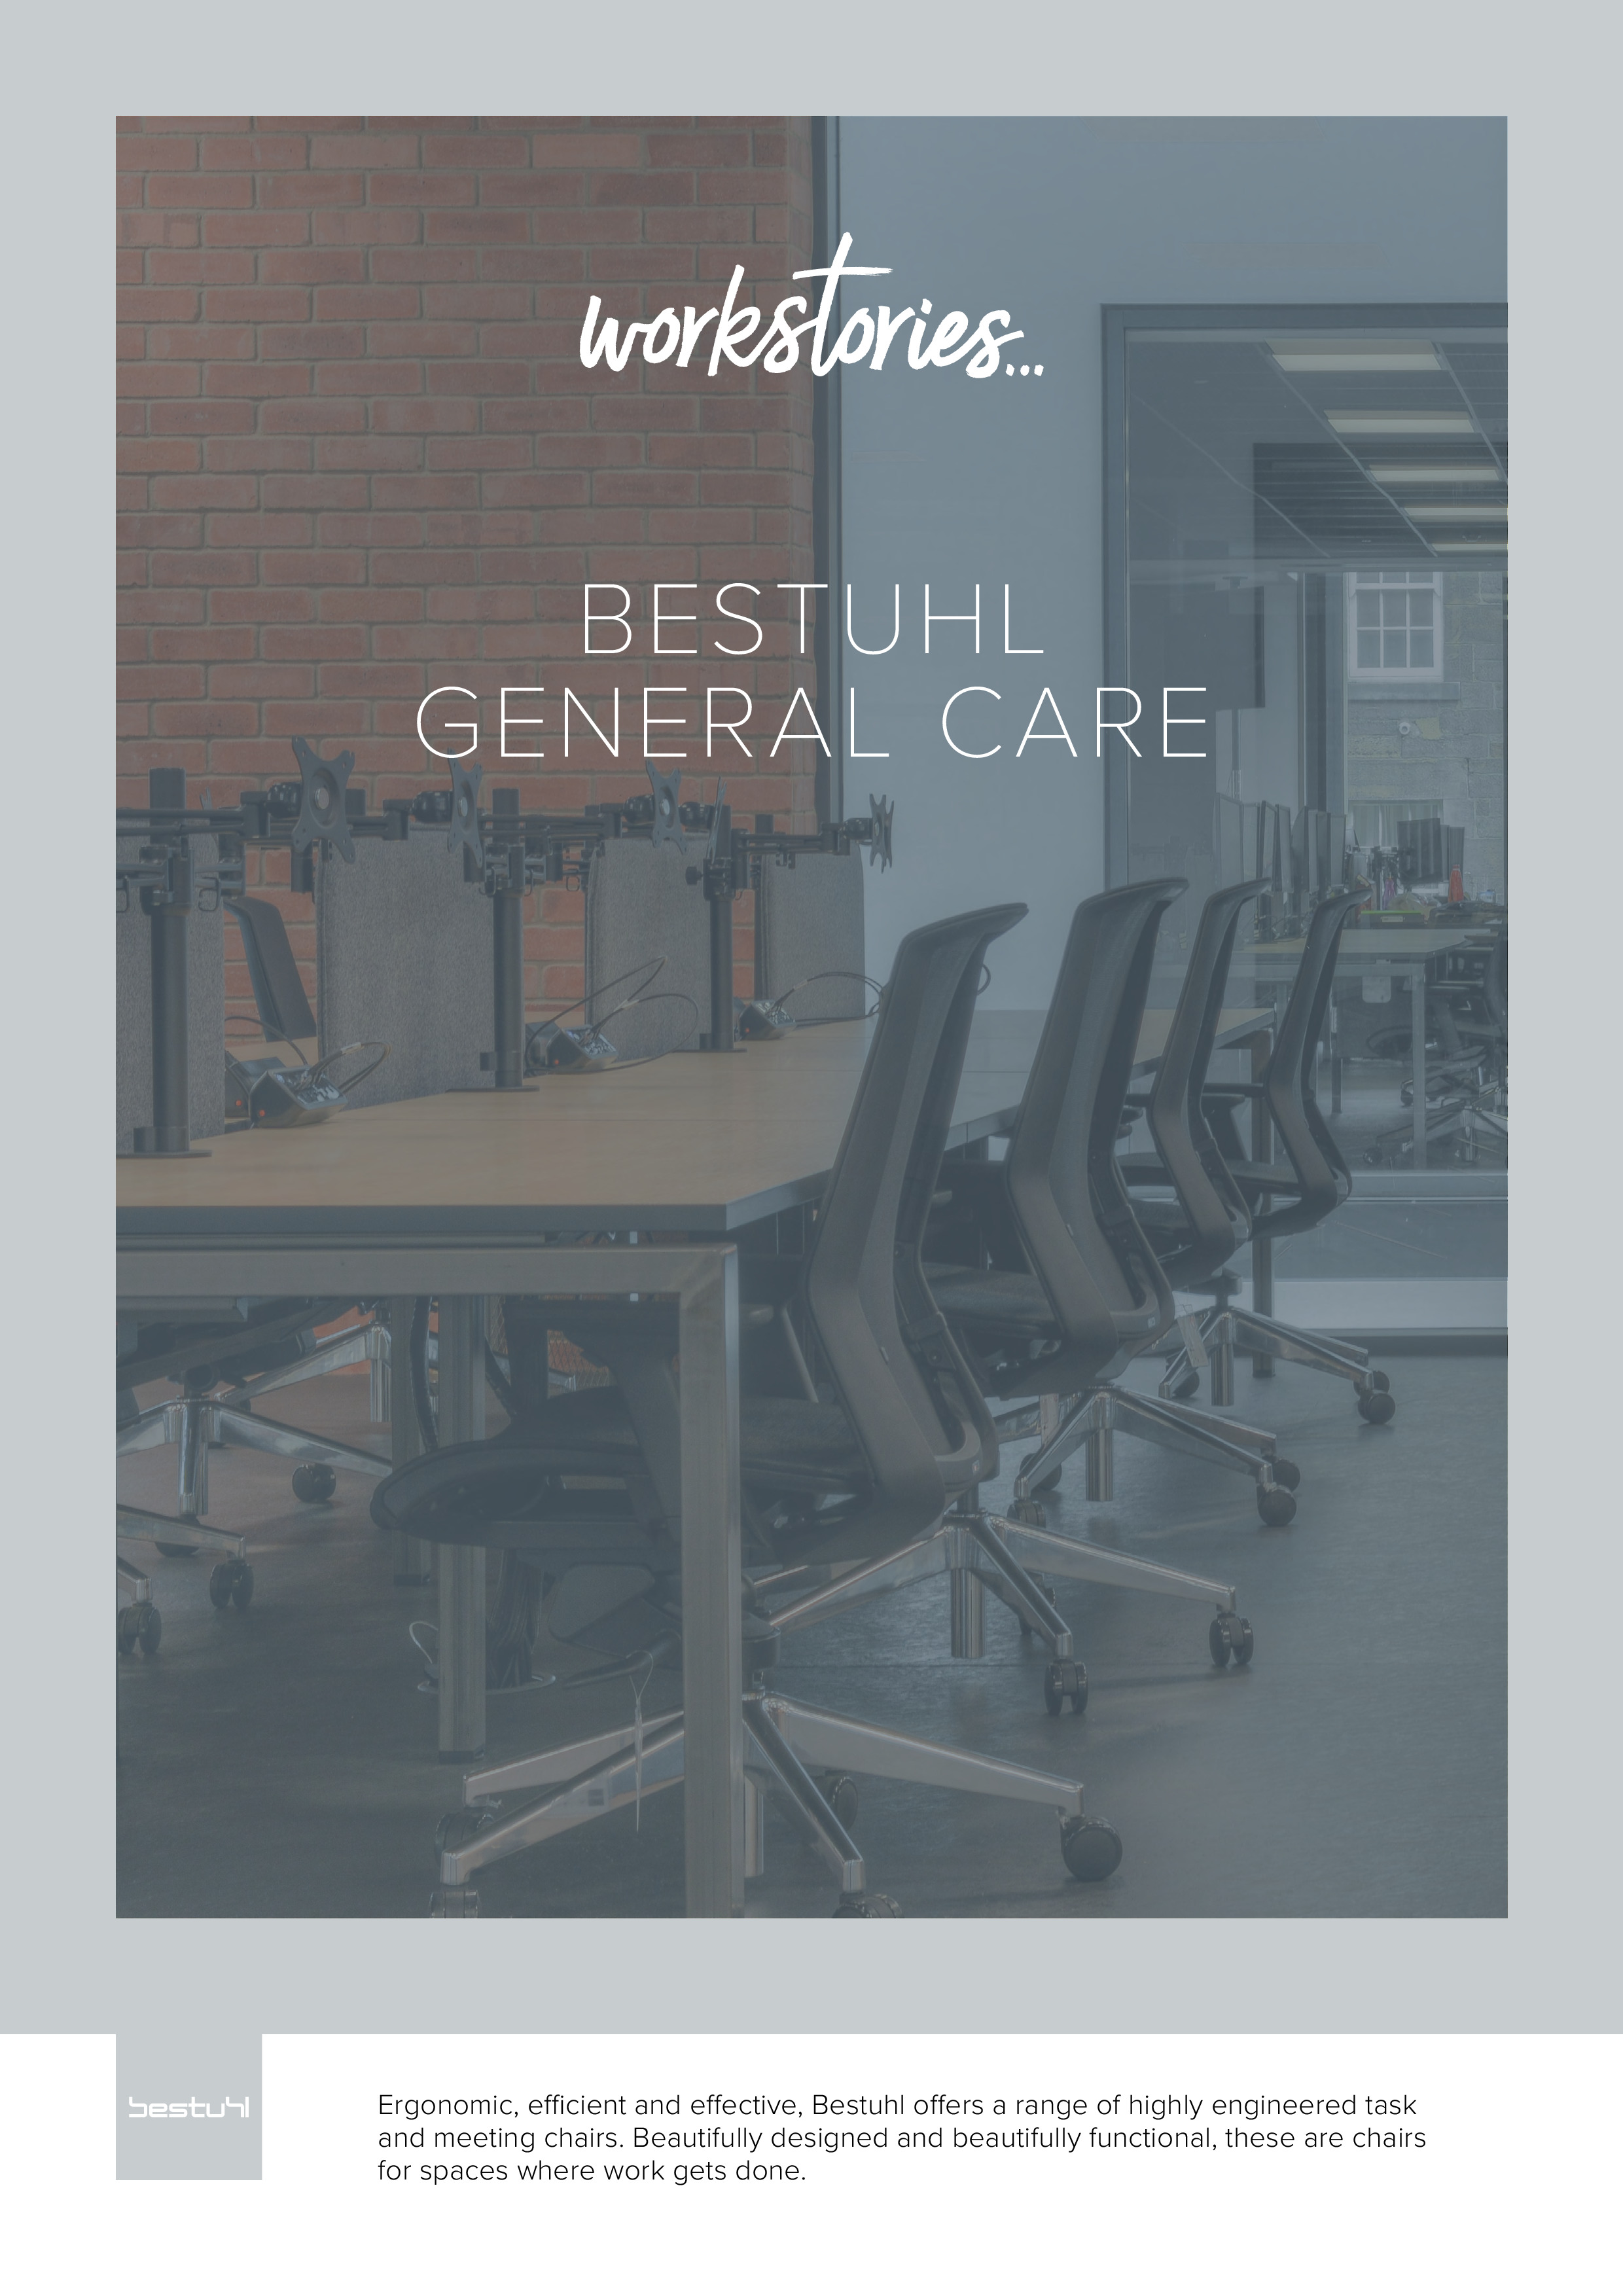 Workstories - General Care - Bestuhl